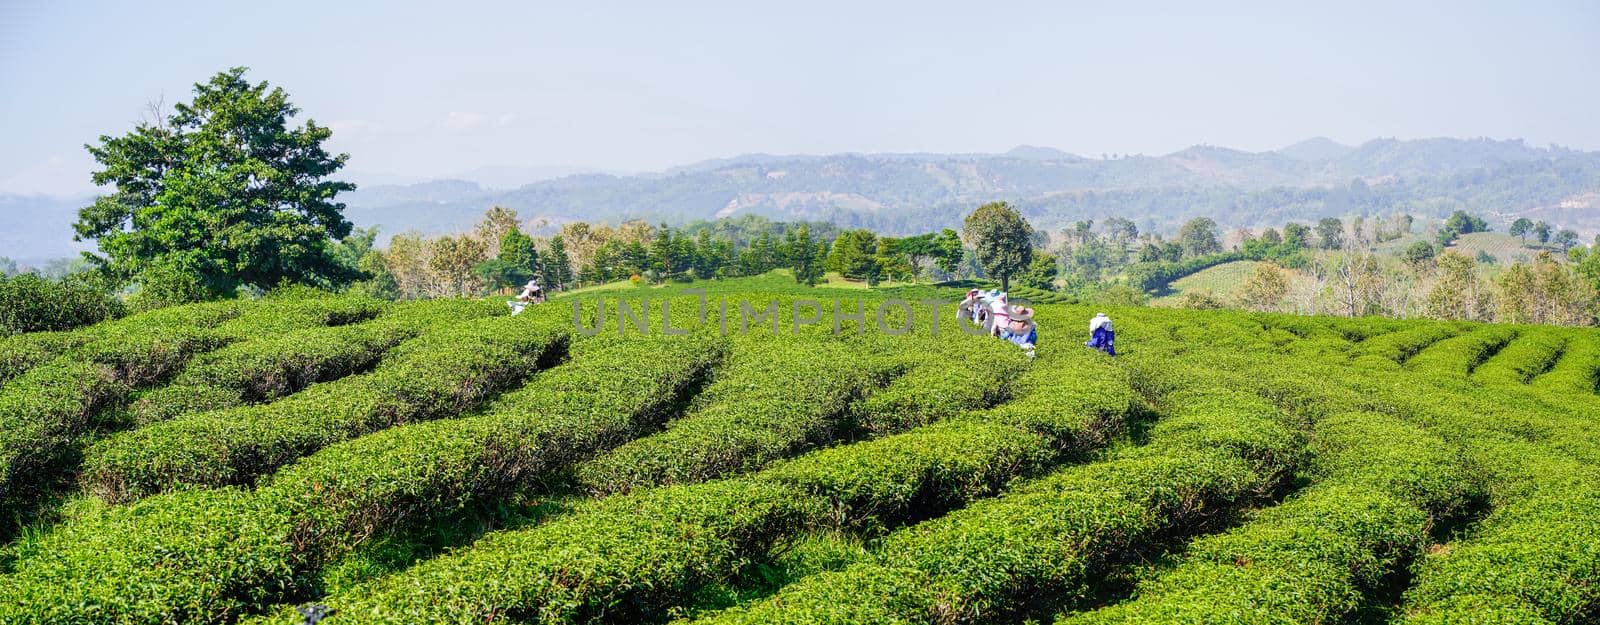 Worker women harvesting tea leaves on farmland of tea plantation